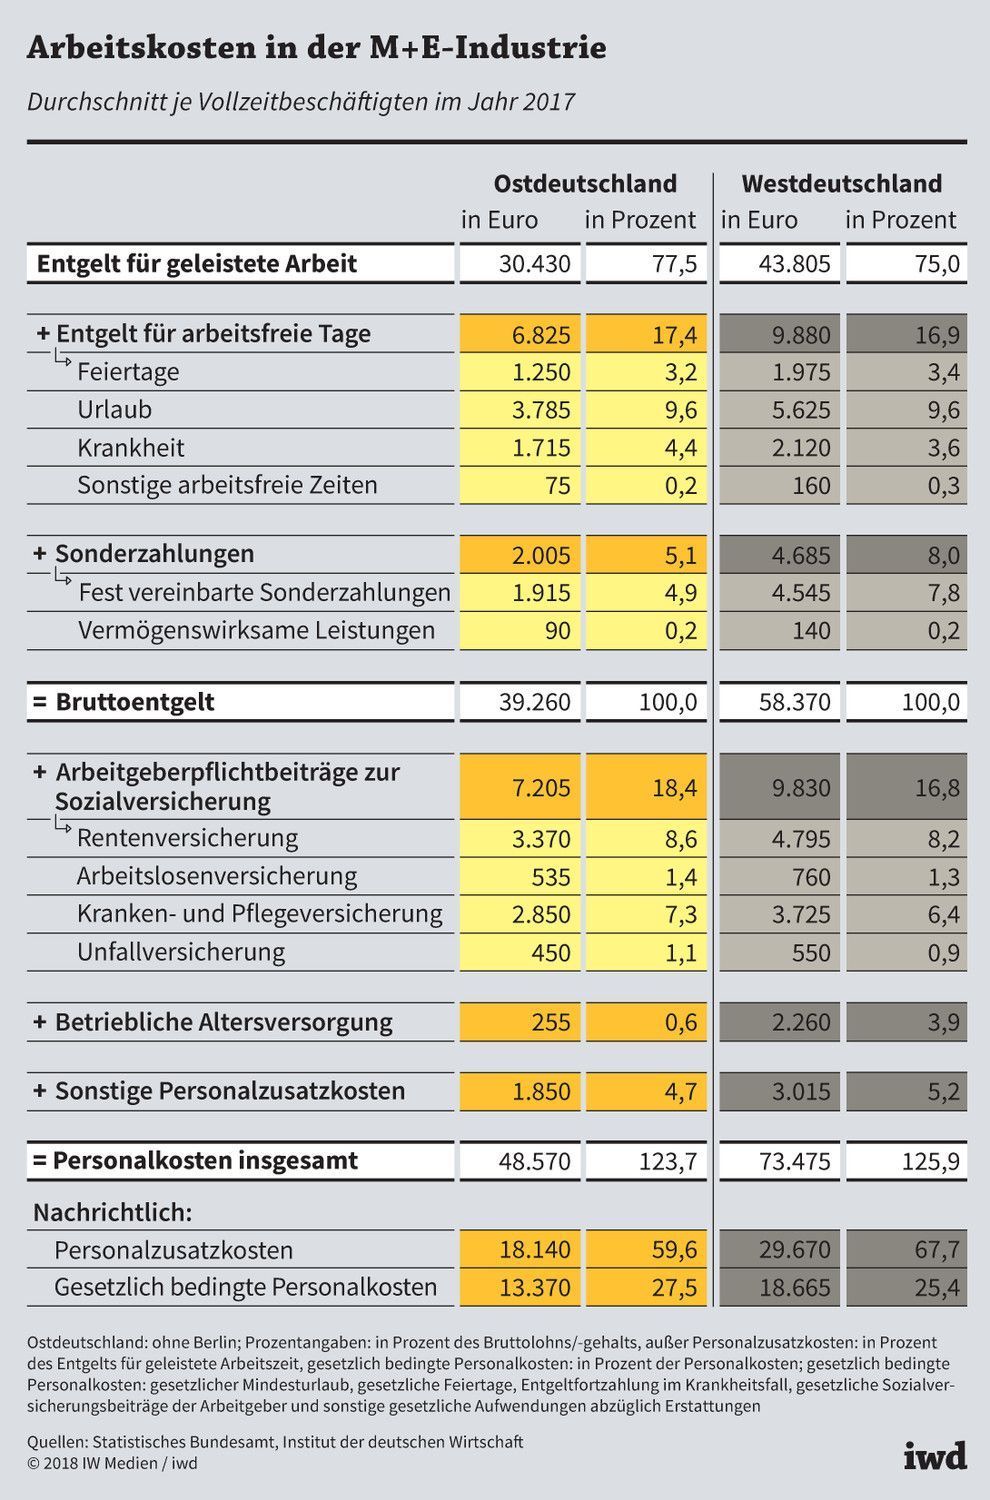 Durchschnittliches Bruttoentgelt und Personalzusatzkosten je Vollzeitbeschäftigten im Jahr 2017 in Ost- und Westdeutschland